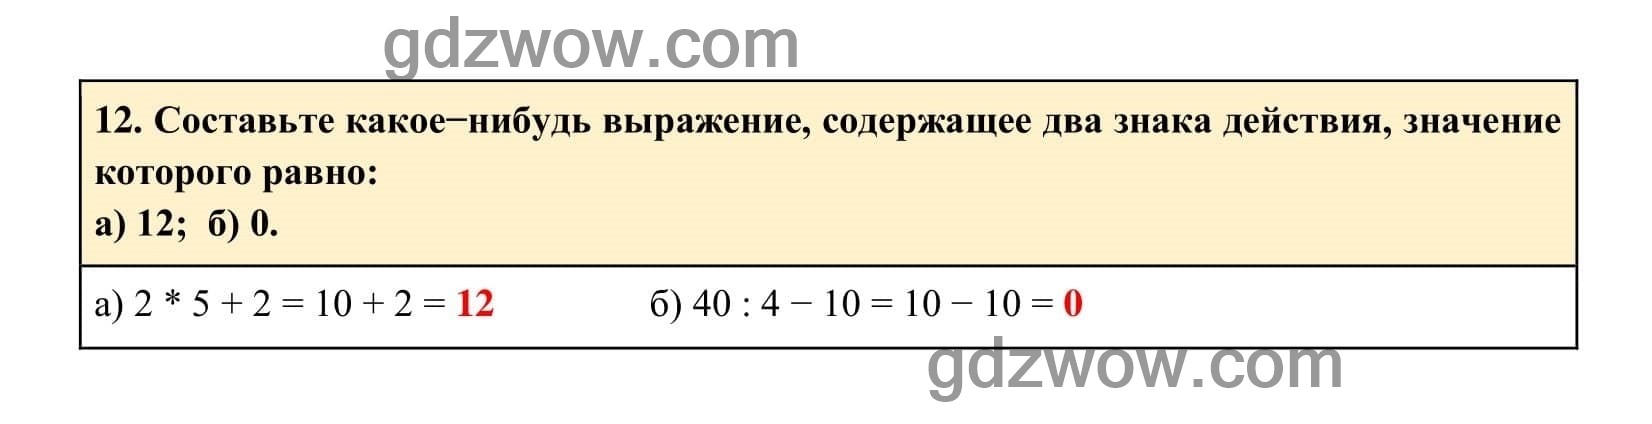 Упражнение 12 - ГДЗ по Алгебре 7 класс Учебник Макарычев (решебник) - GDZwow